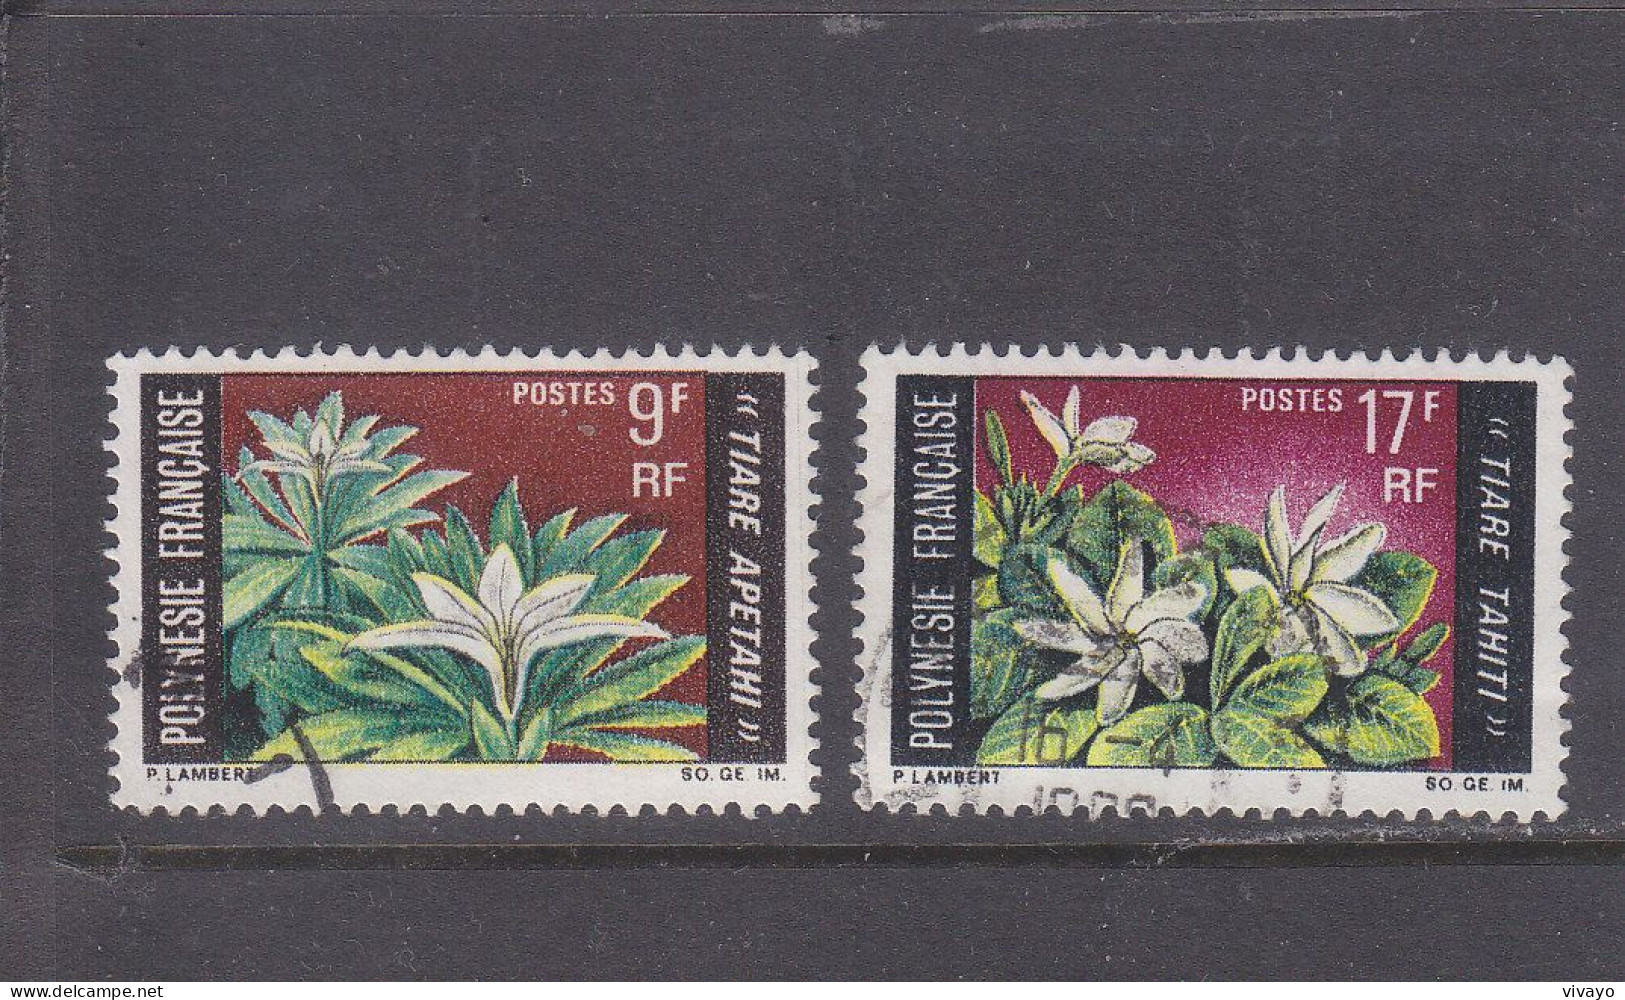 FRENCH POLYNESIA - POLYNESIE FRAN. - O / FINE CANCELLED - 1969 - LOCAL FLOWERS - Yv. 64/65  - Mi. 90/91 - Usados